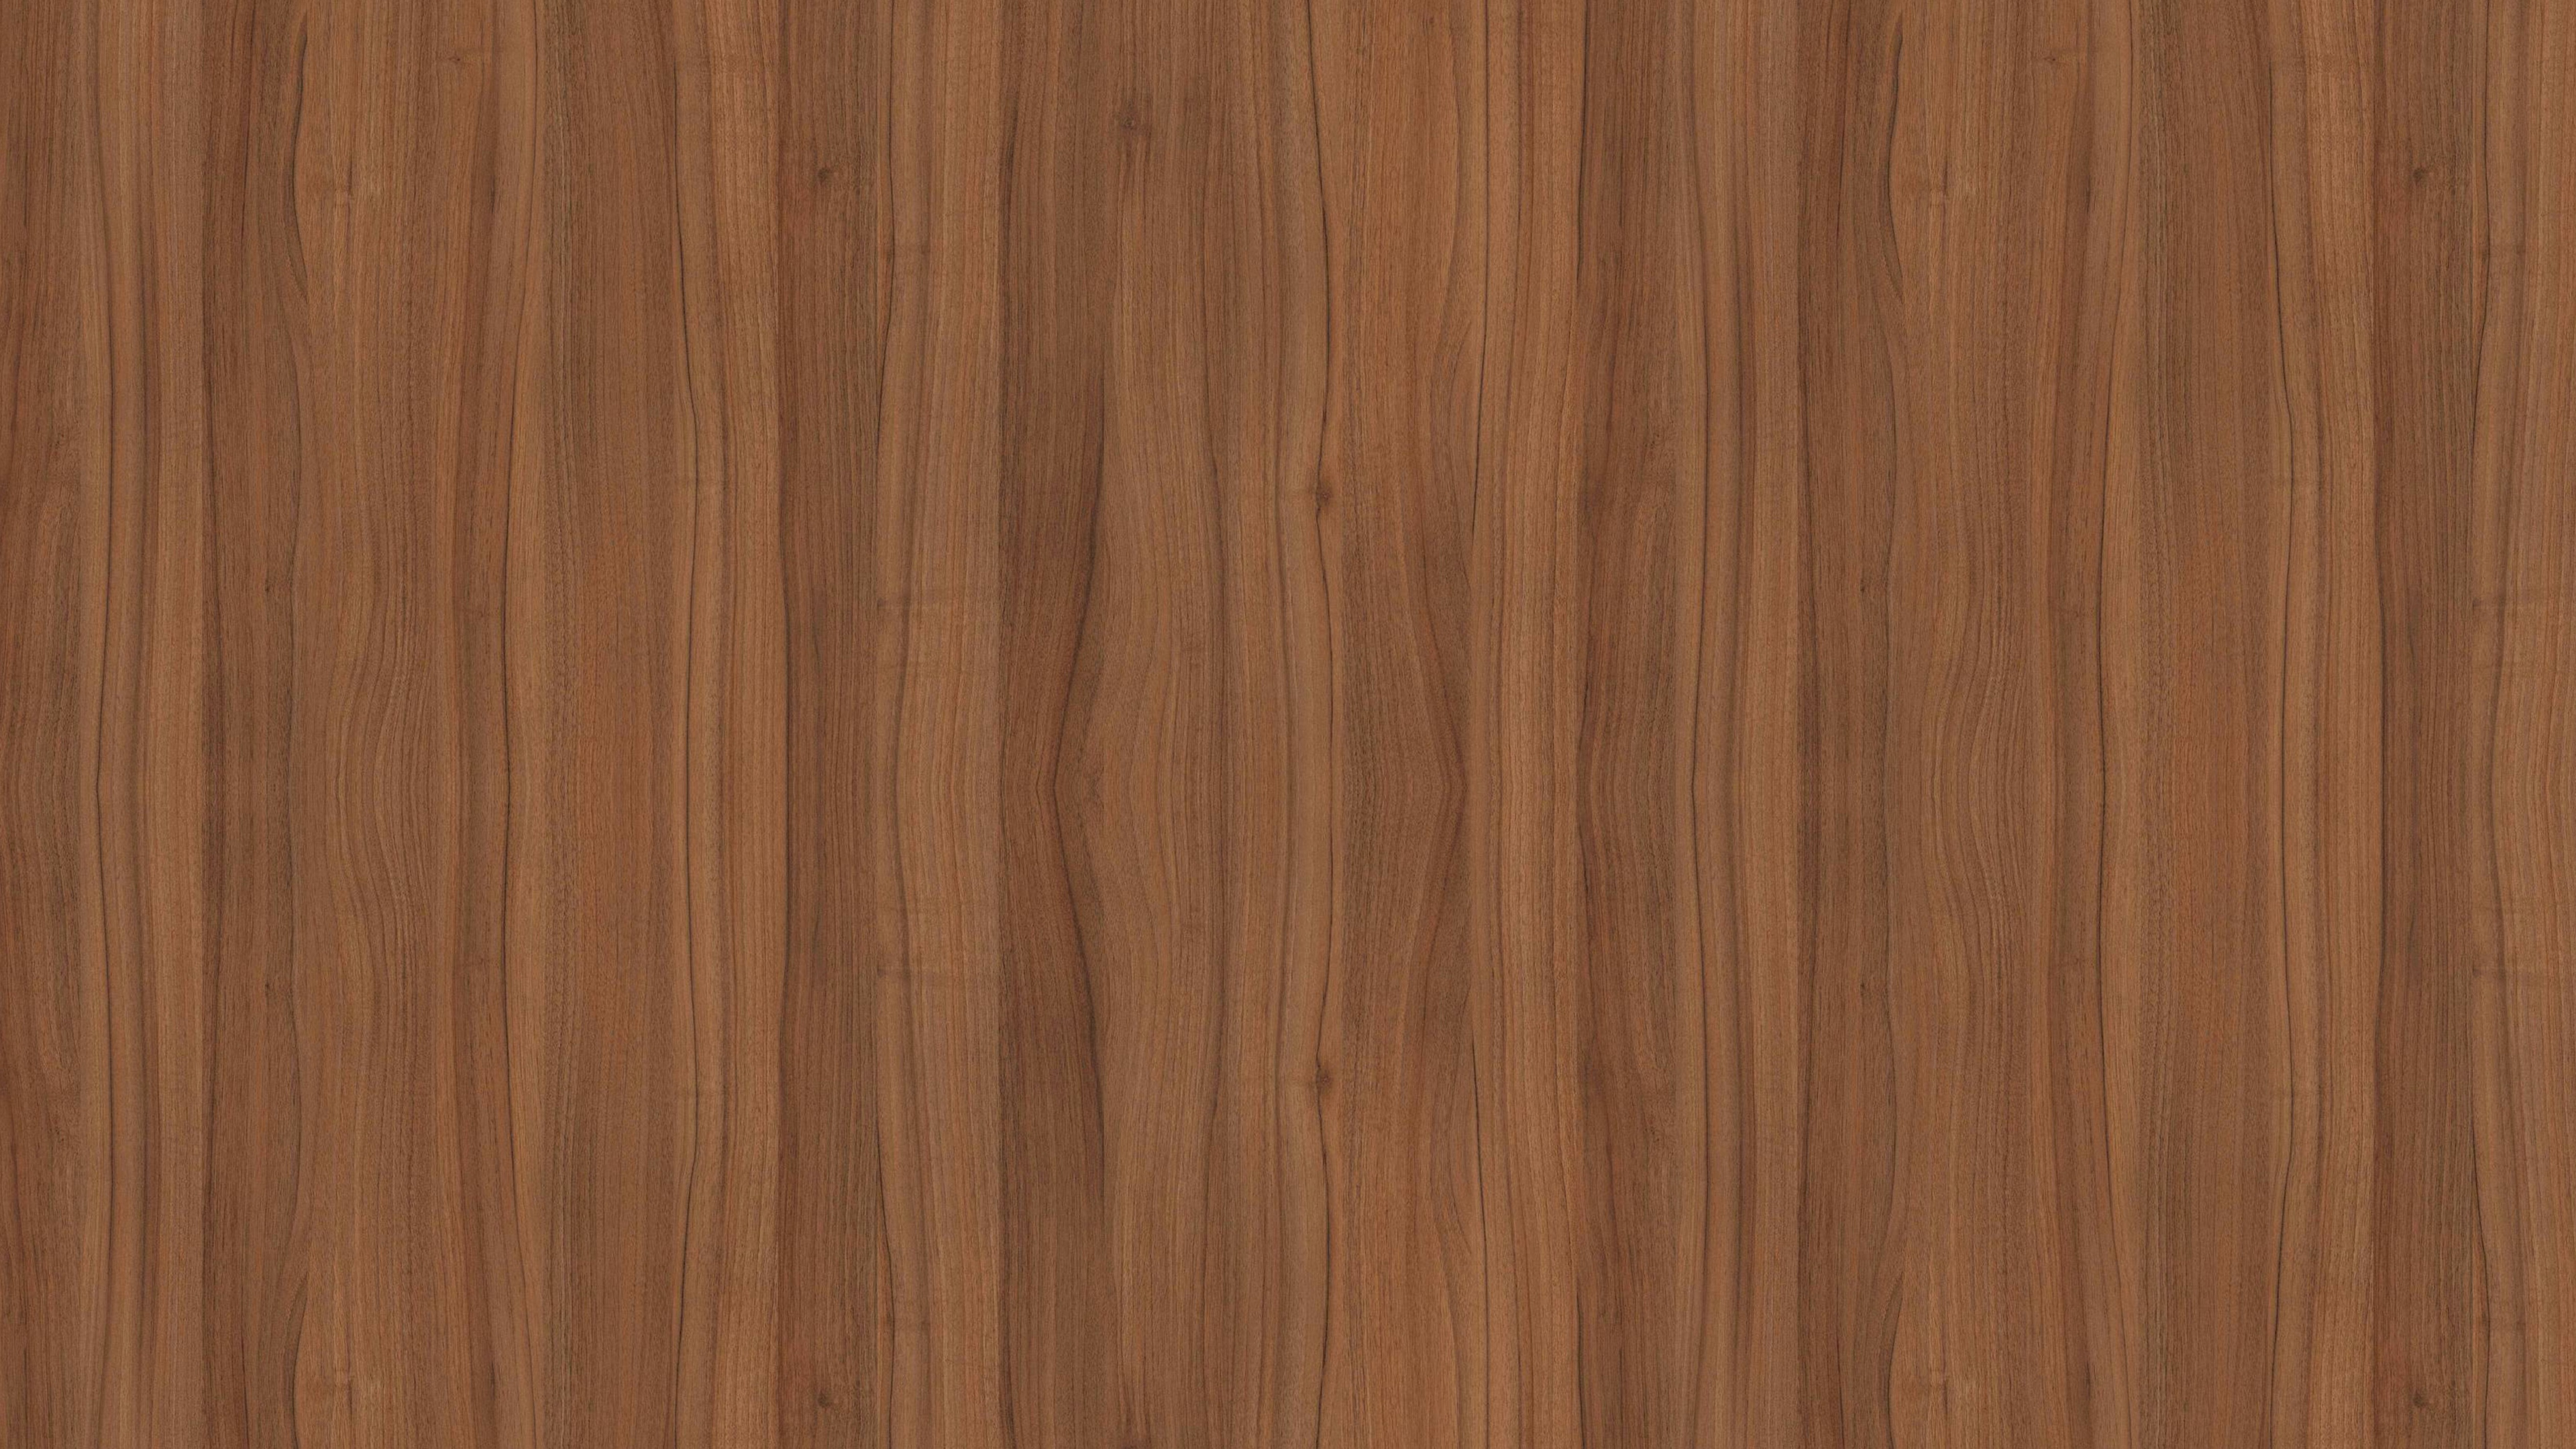 Brown Wooden Parquet Floor Tiles. Wallpaper in 3840x2160 Resolution